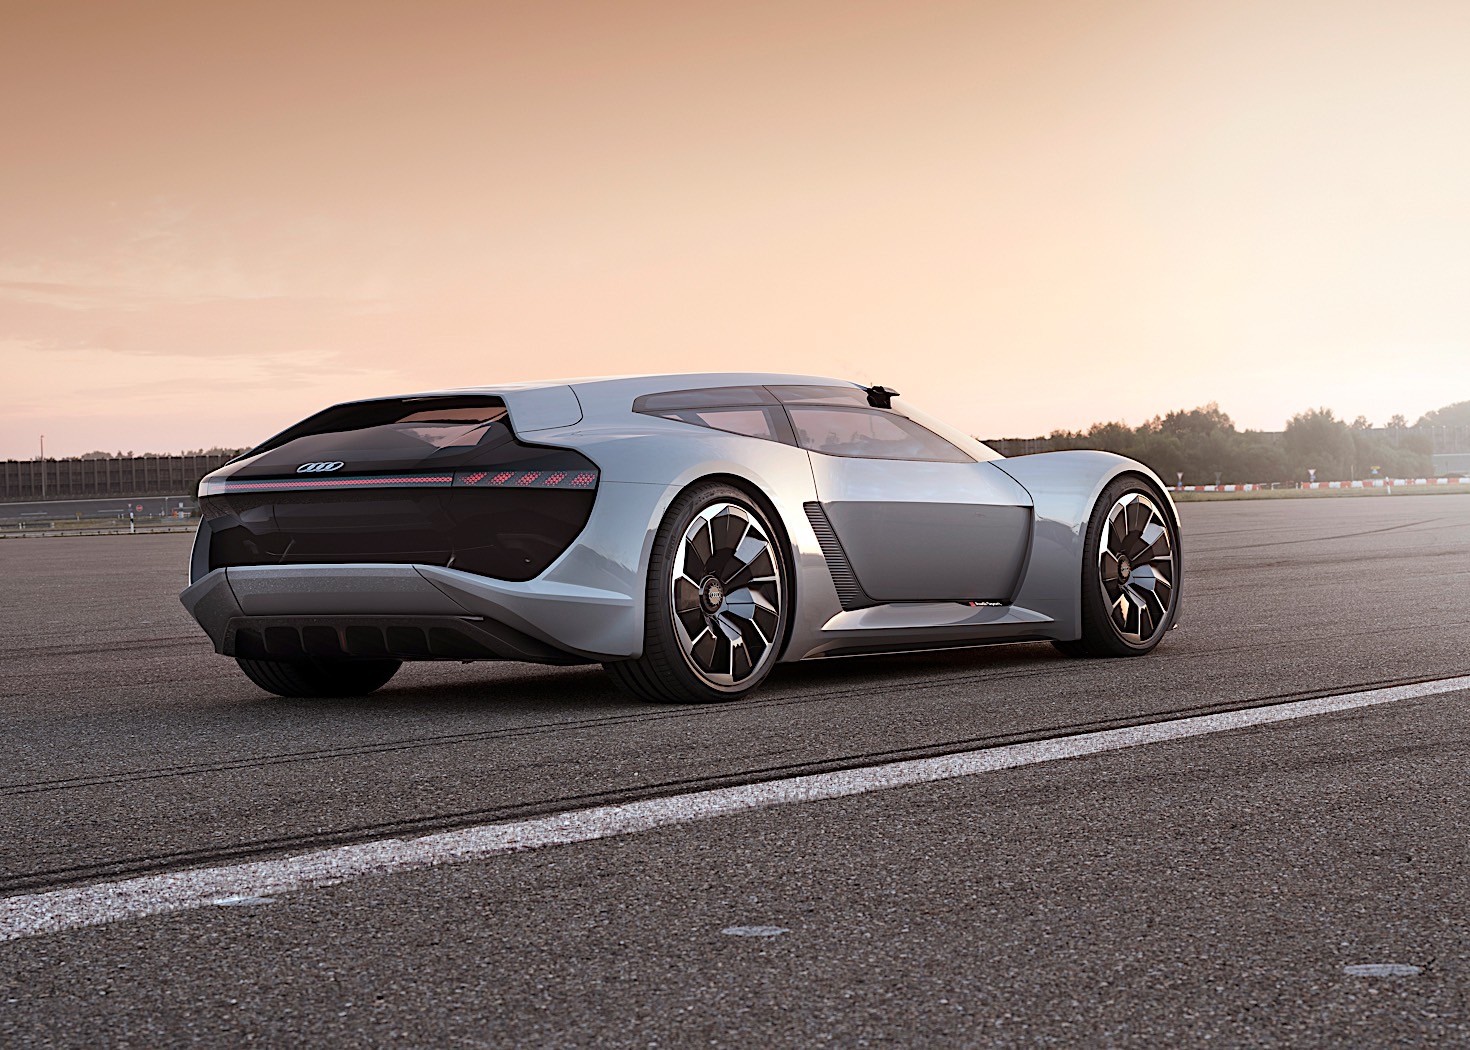 The Future Of Luxury: The Audi PB18 E tron Concept